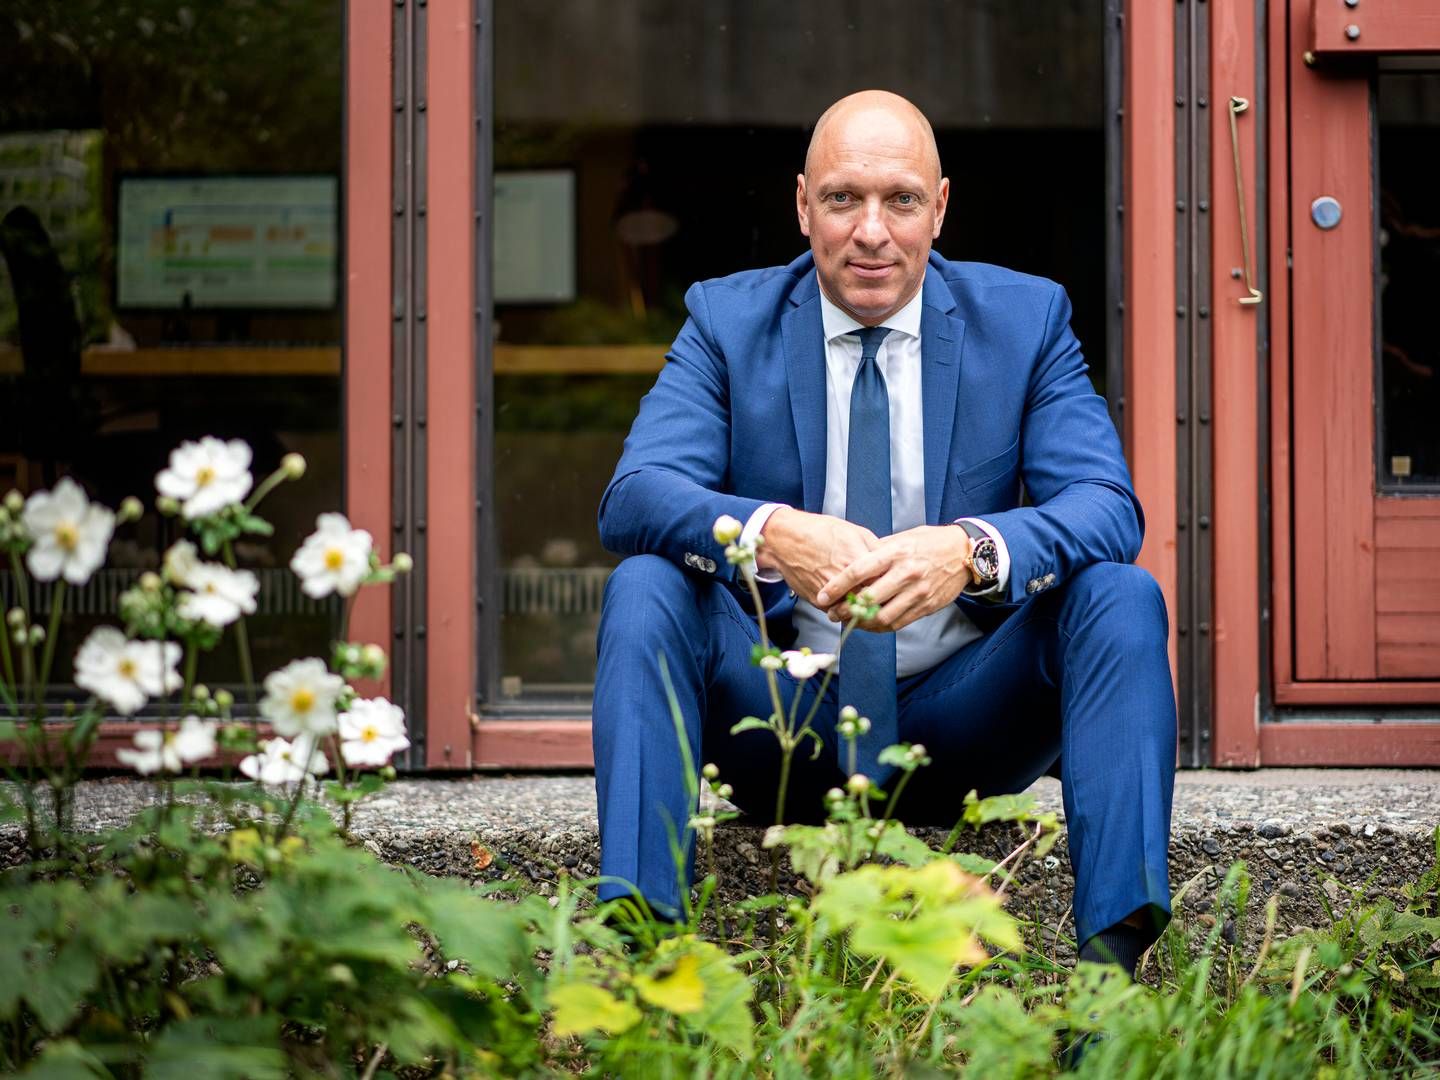 Peter Hermann er adm. direktør for Topdanmark, der er landets tredjestørste forsikringsselskab. | Foto: Stine Bidstrup/Ritzau Scanpix